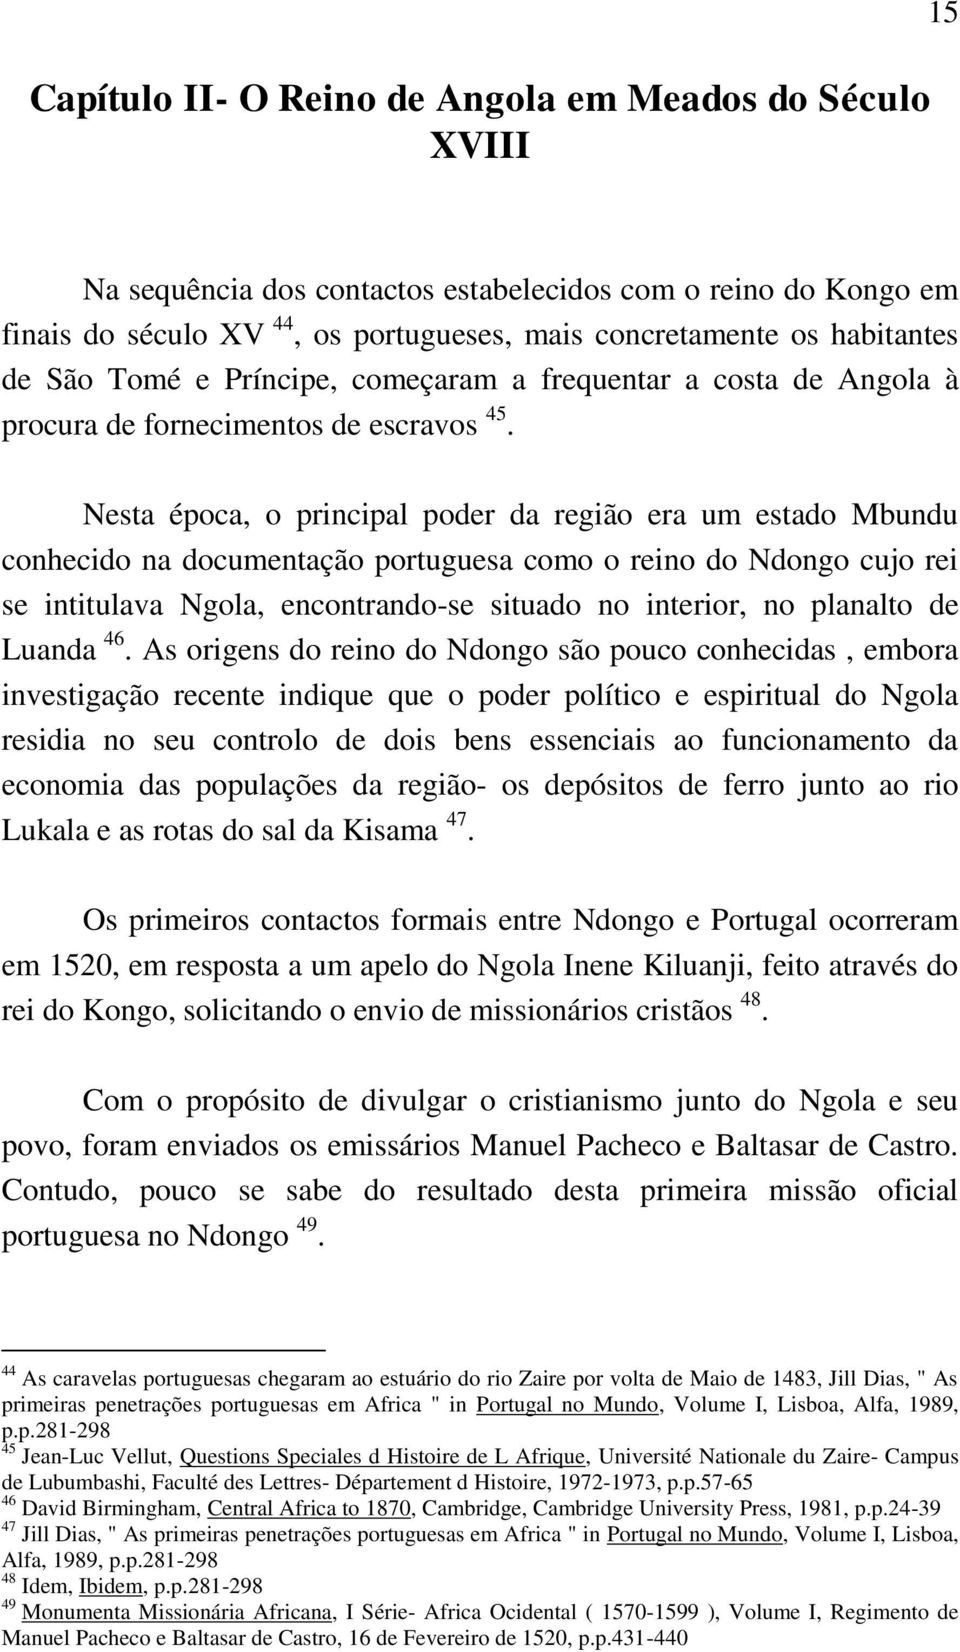 Nesta época, o principal poder da região era um estado Mbundu conhecido na documentação portuguesa como o reino do Ndongo cujo rei se intitulava Ngola, encontrando-se situado no interior, no planalto